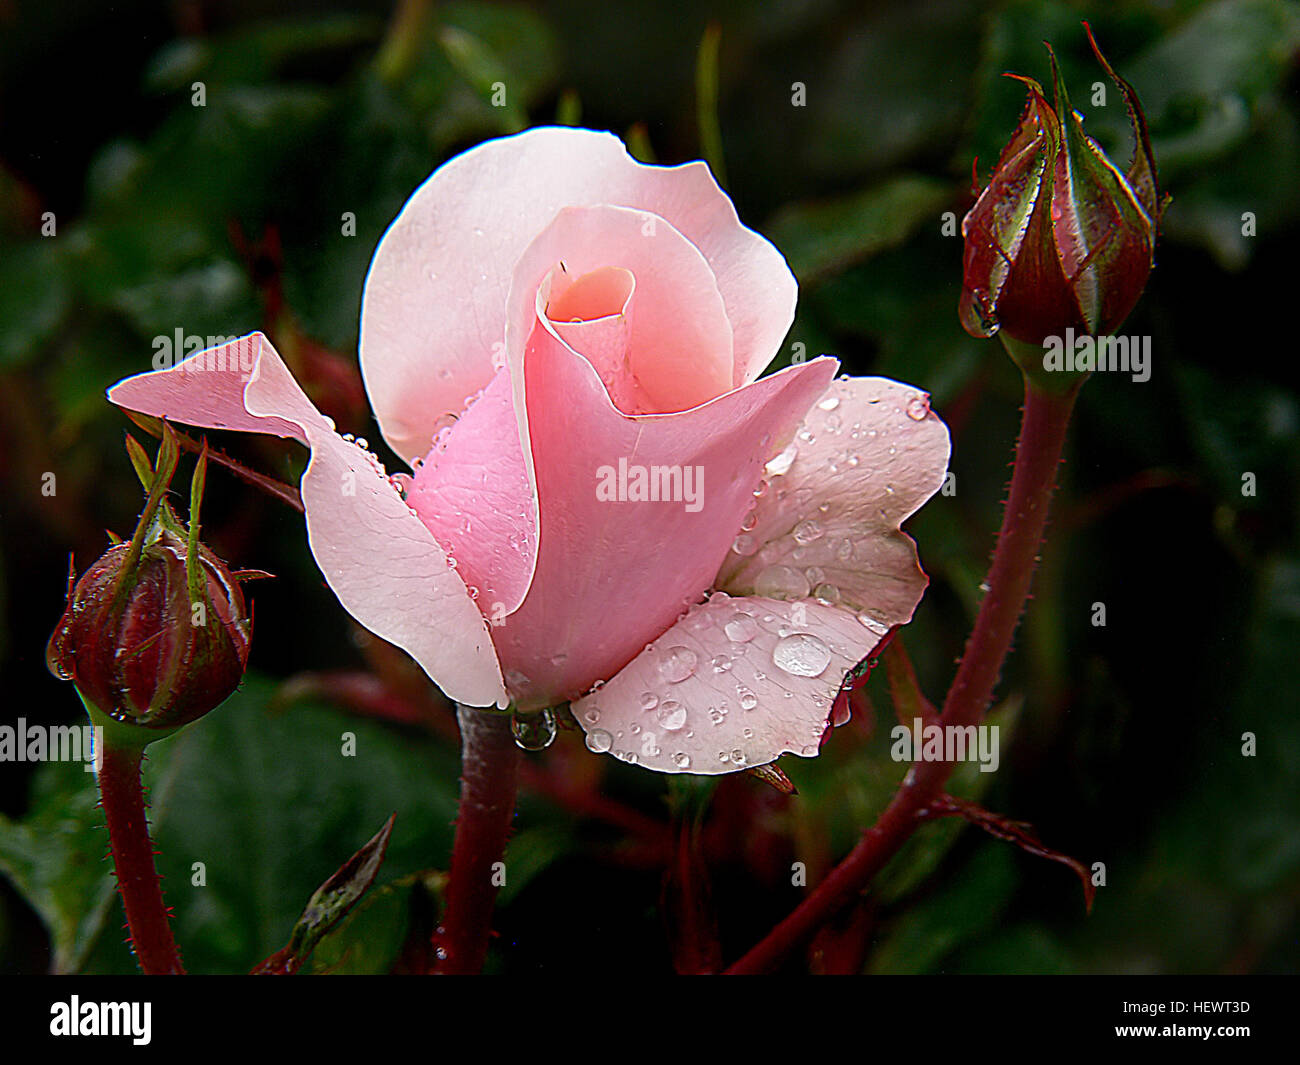 Appropr iat (,),,,blumi,Valintine cuore rosa,floreali,fiori,giardinaggio,rose Foto Stock